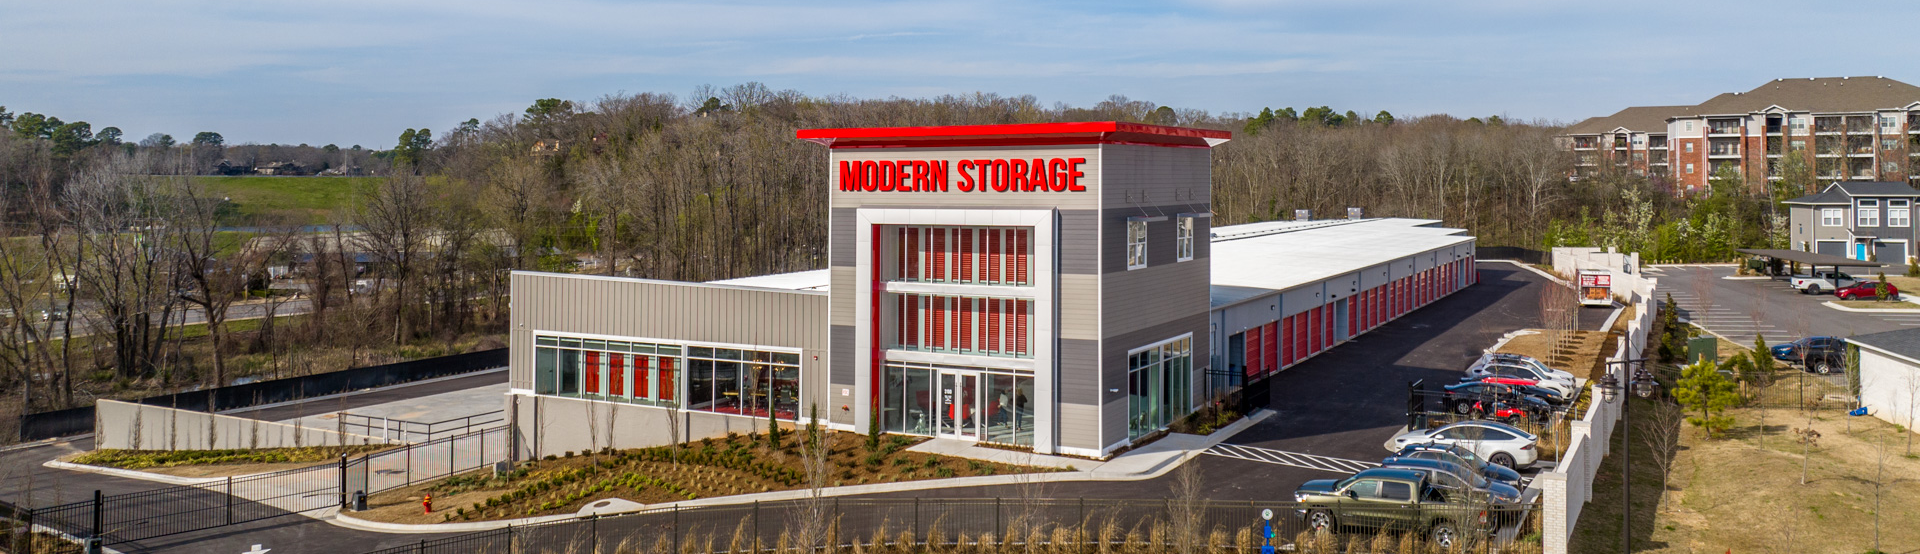 Modern Storage Exterior